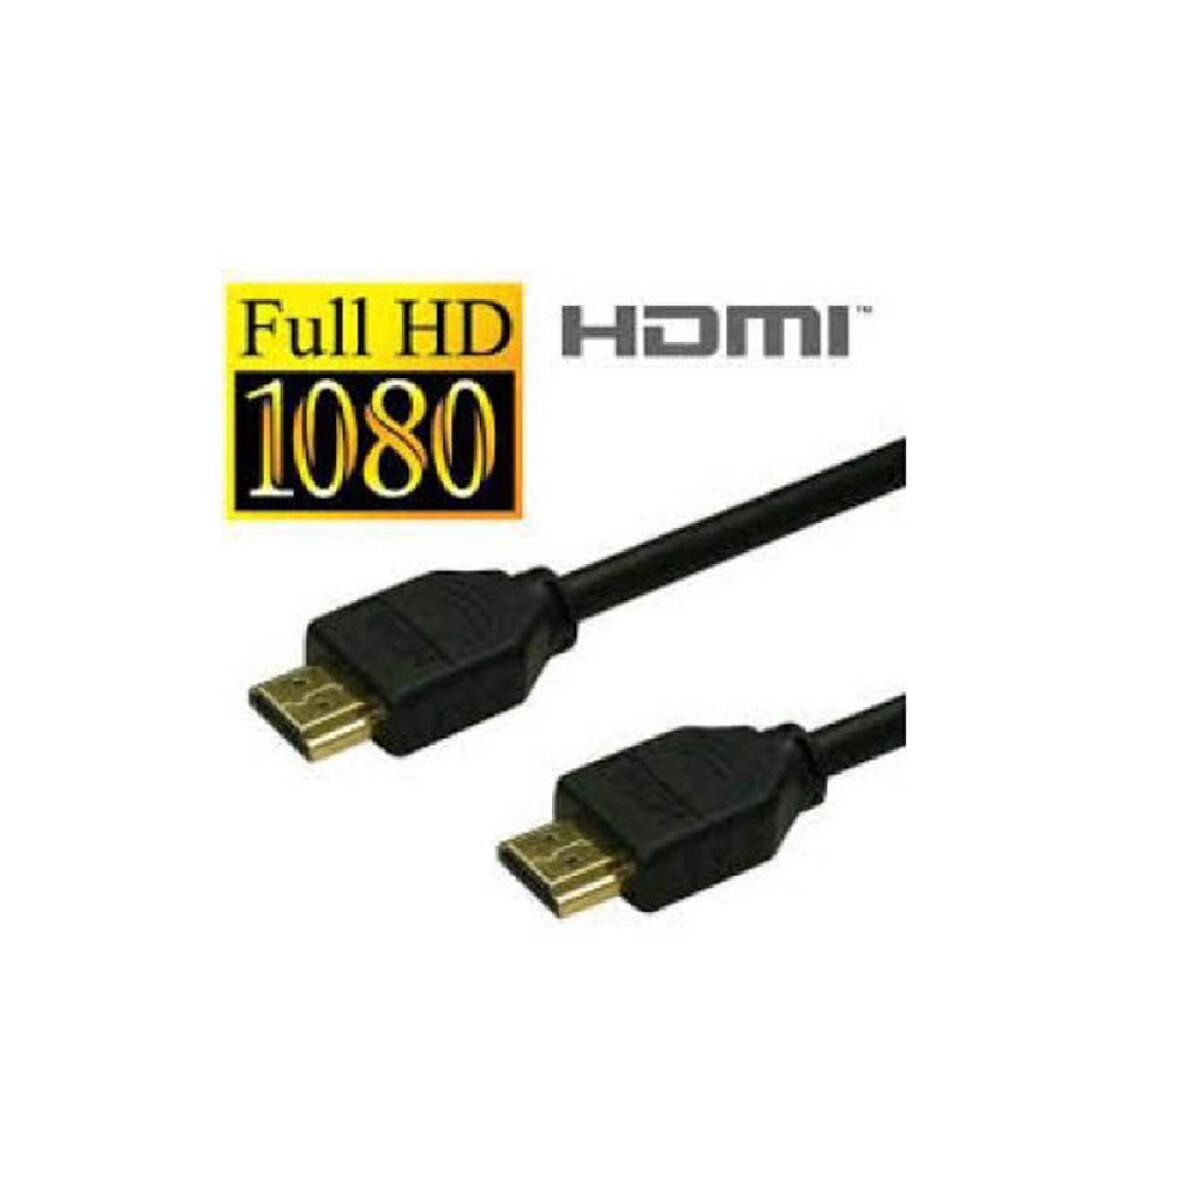 Cable Hdmi 1.8 M Xi- Hdmi187730976463068 